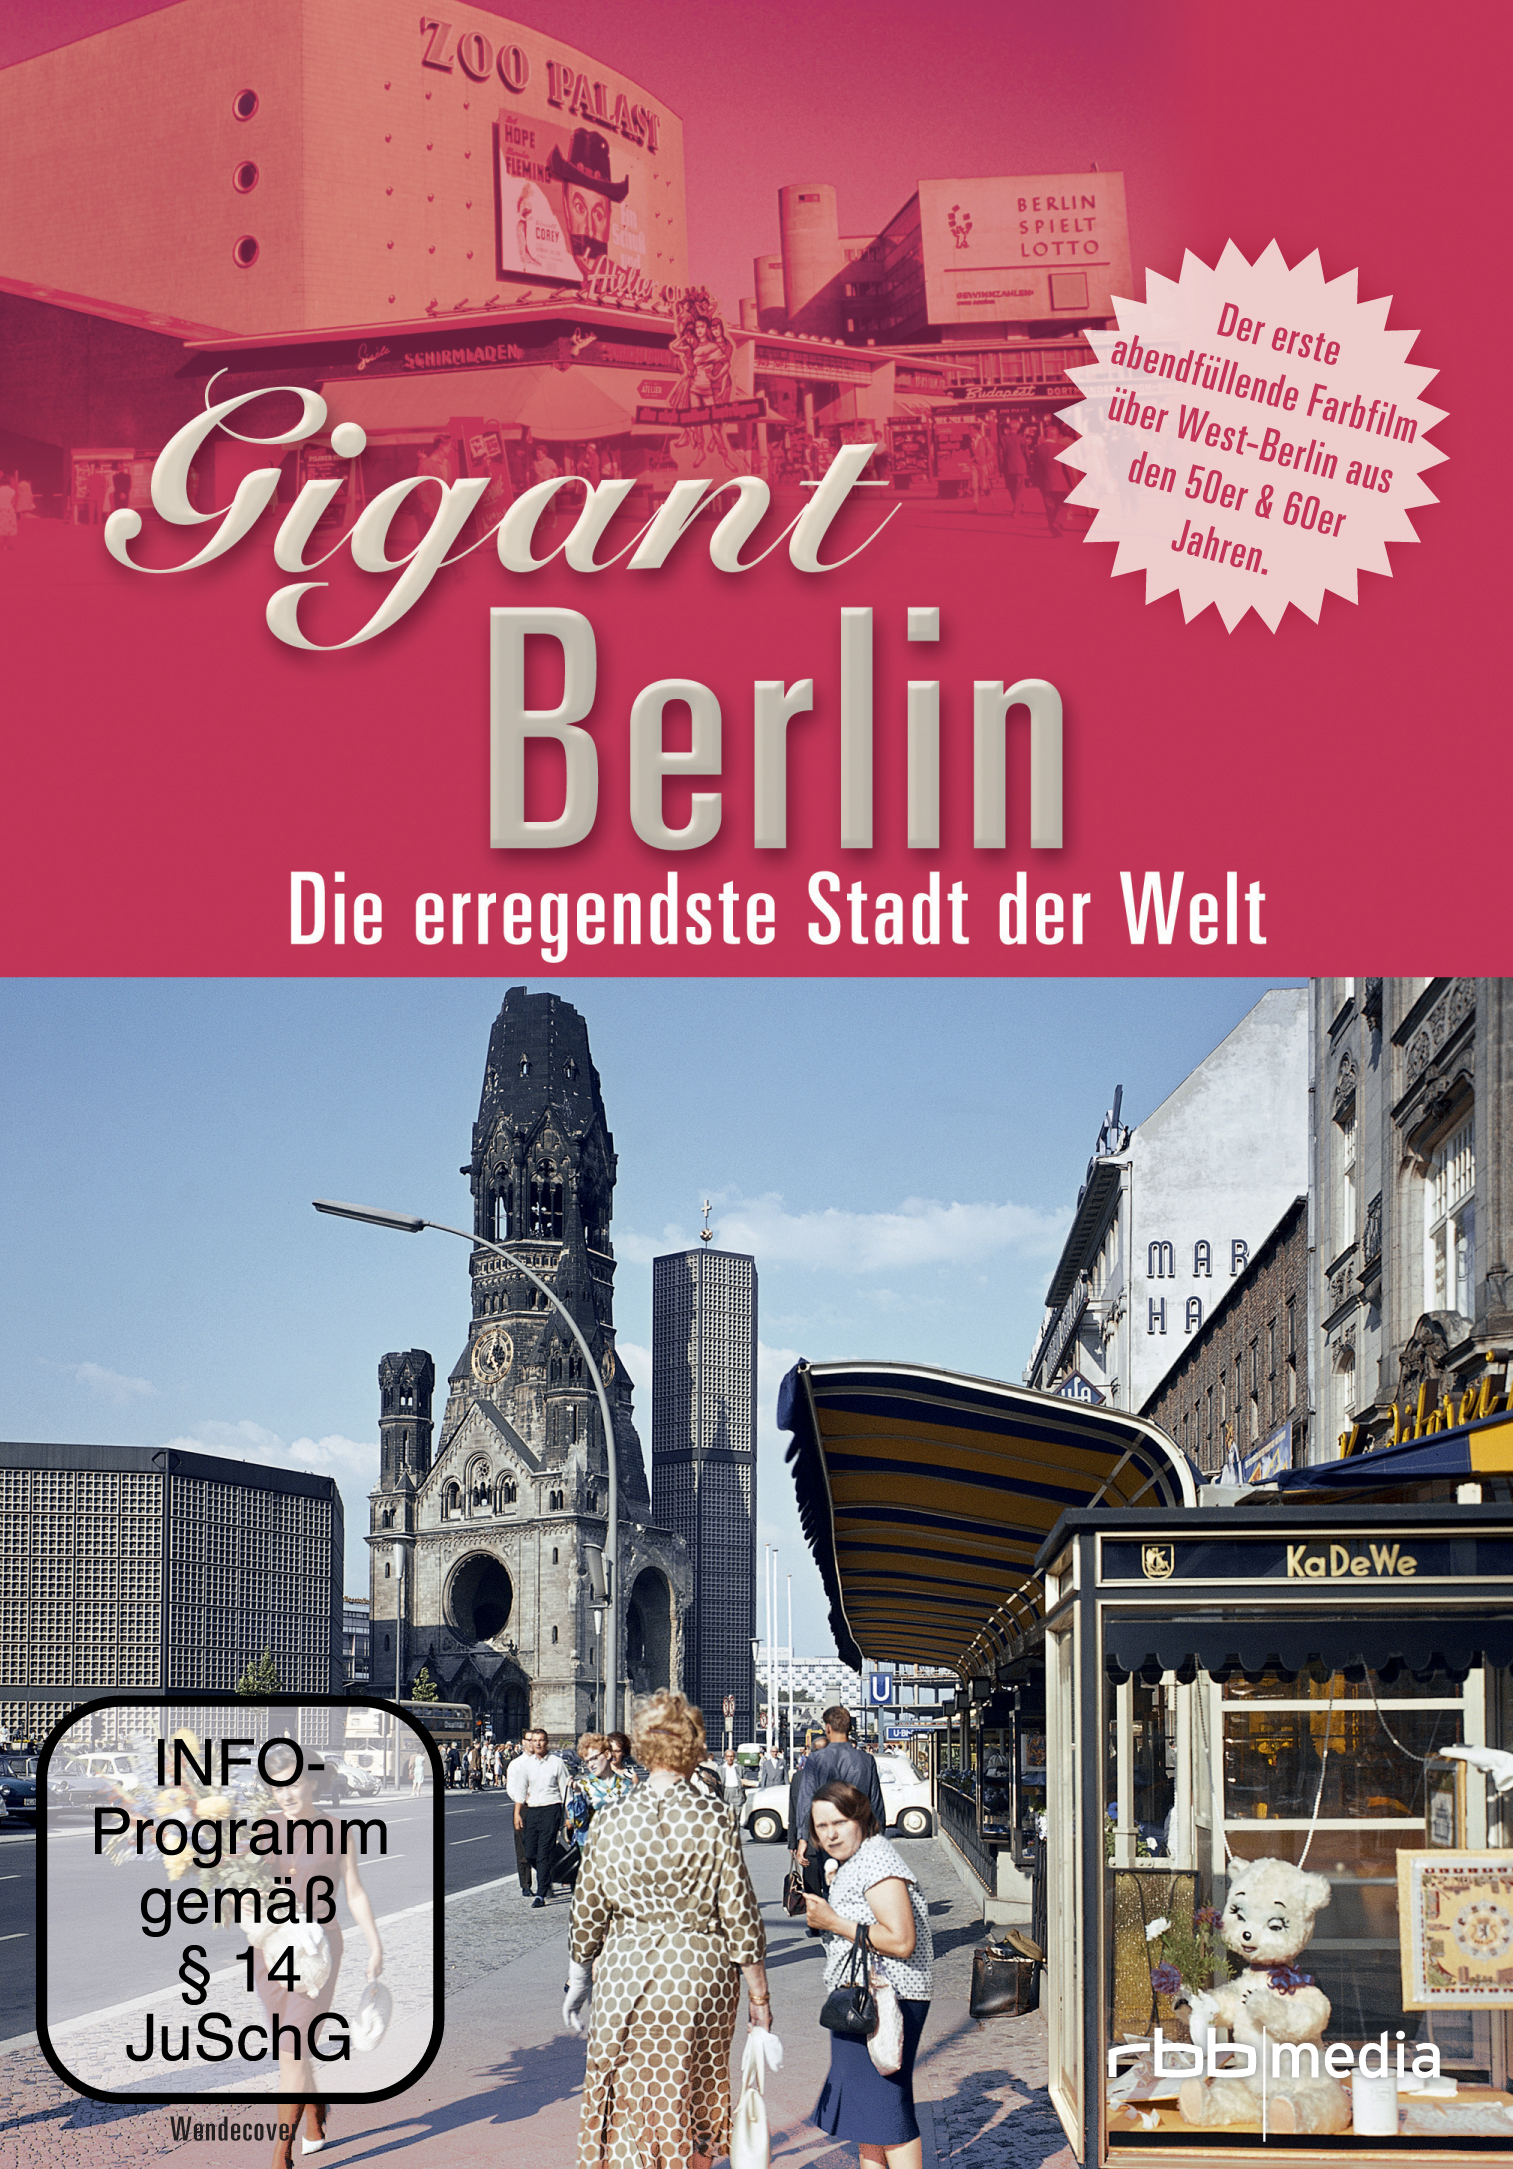 Gigant Berlin - Die Stadt der erregendeste DVD Welt